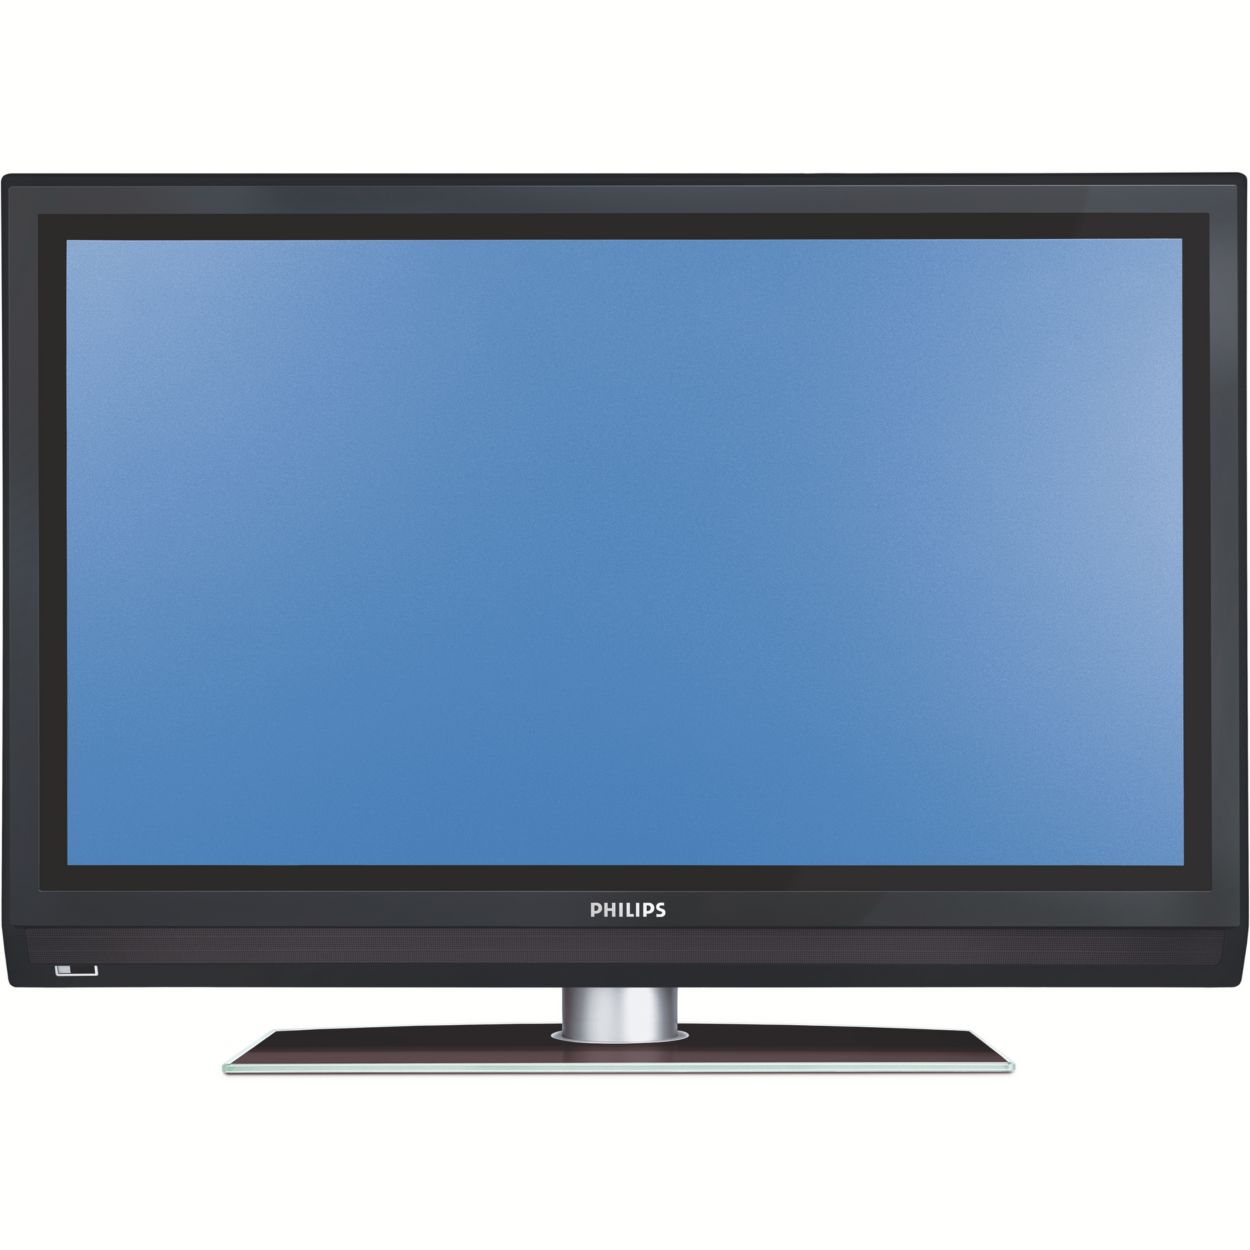 Verwachten voor eeuwig Habubu widescreen flat TV 50PFP5332D/37 | Philips